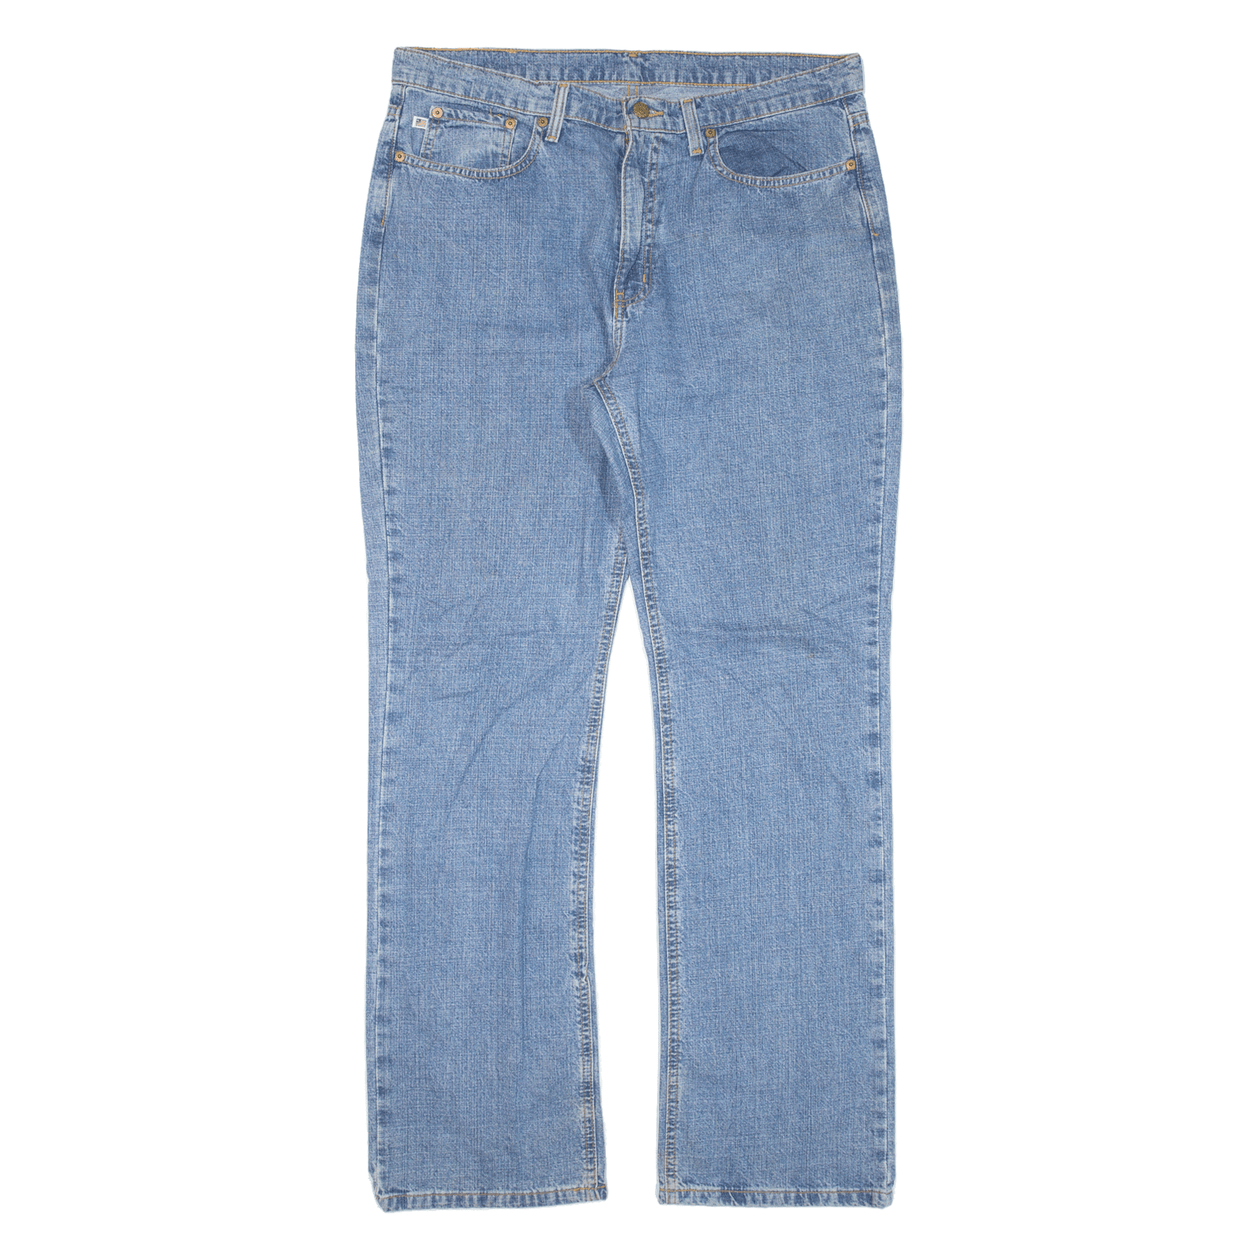 POLO RALPH LAUREN Womens Jeans Blue Regular Bootcut W35 L32 – Cerqular Hong  Kong